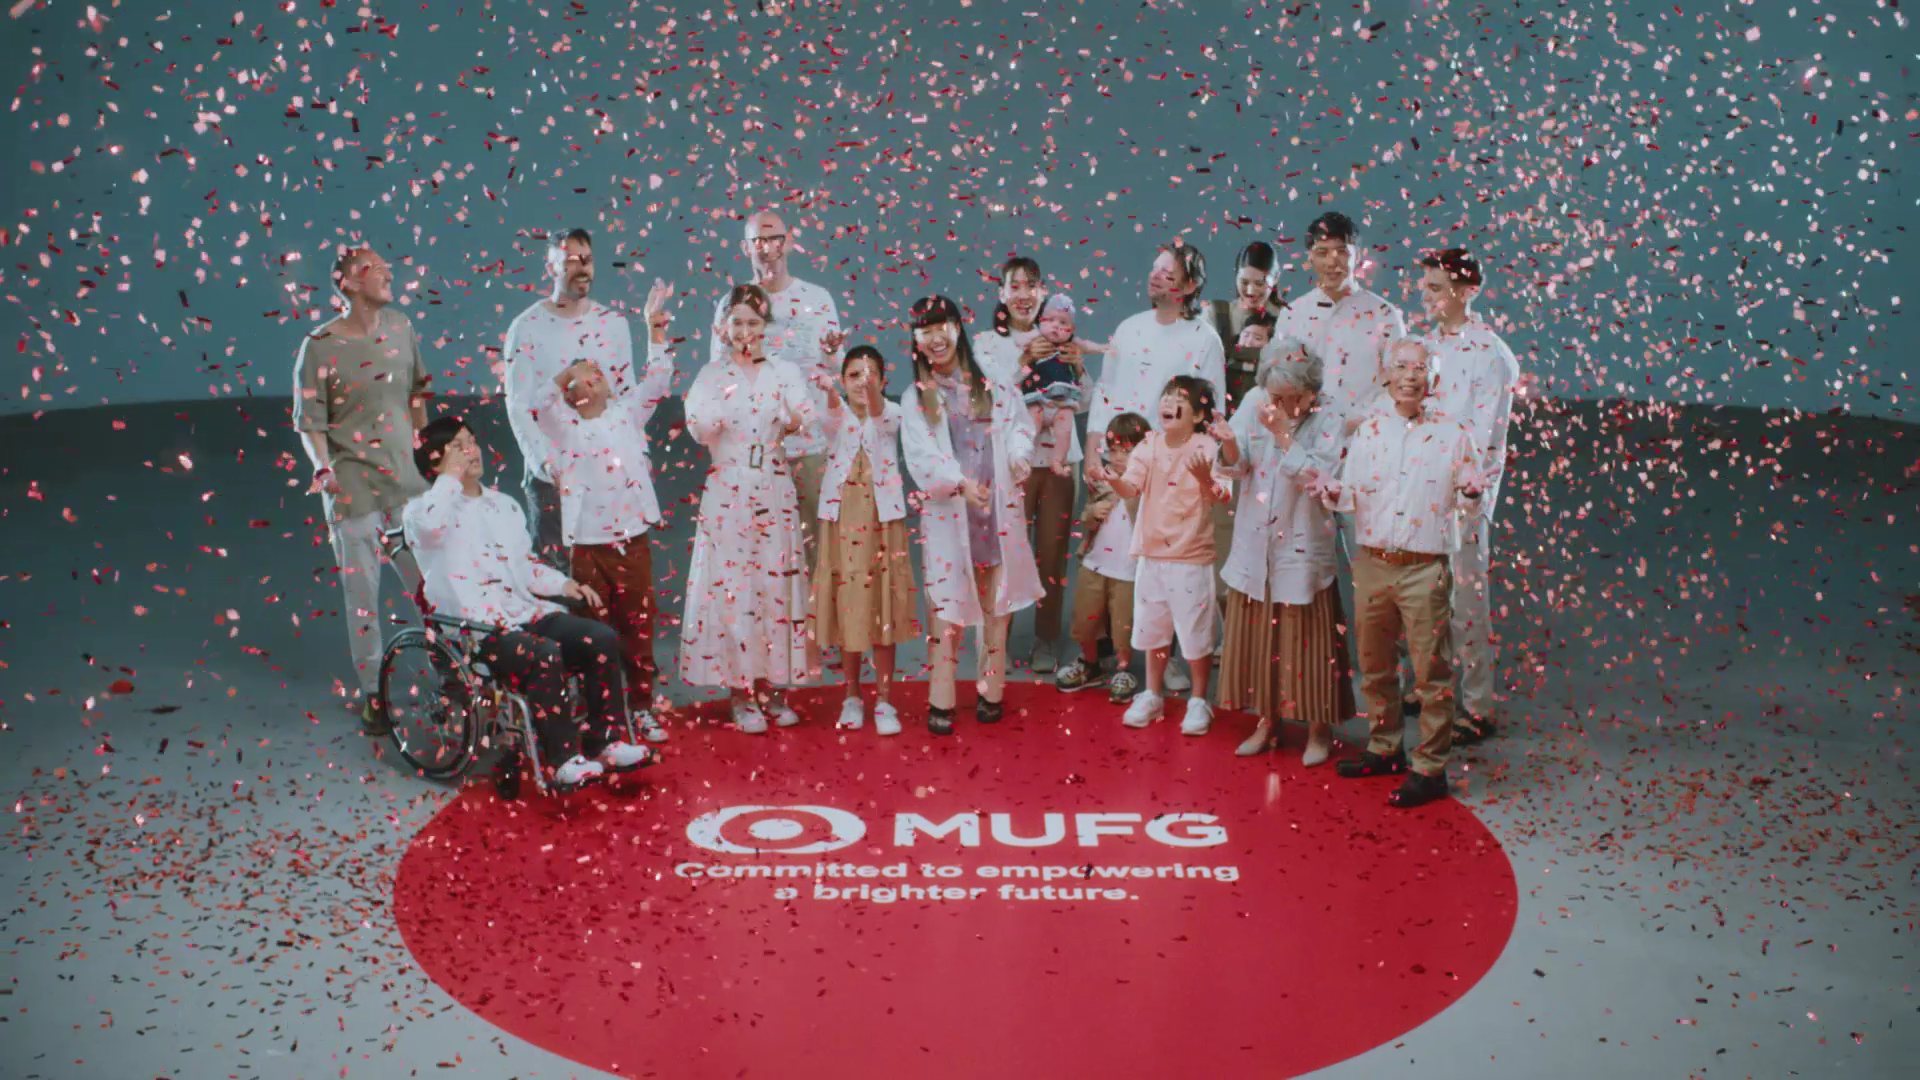 MUFGがサステナビリティへの想いを込めた動画『赤い球の冒険～MUFG Soul Movie～』を公開